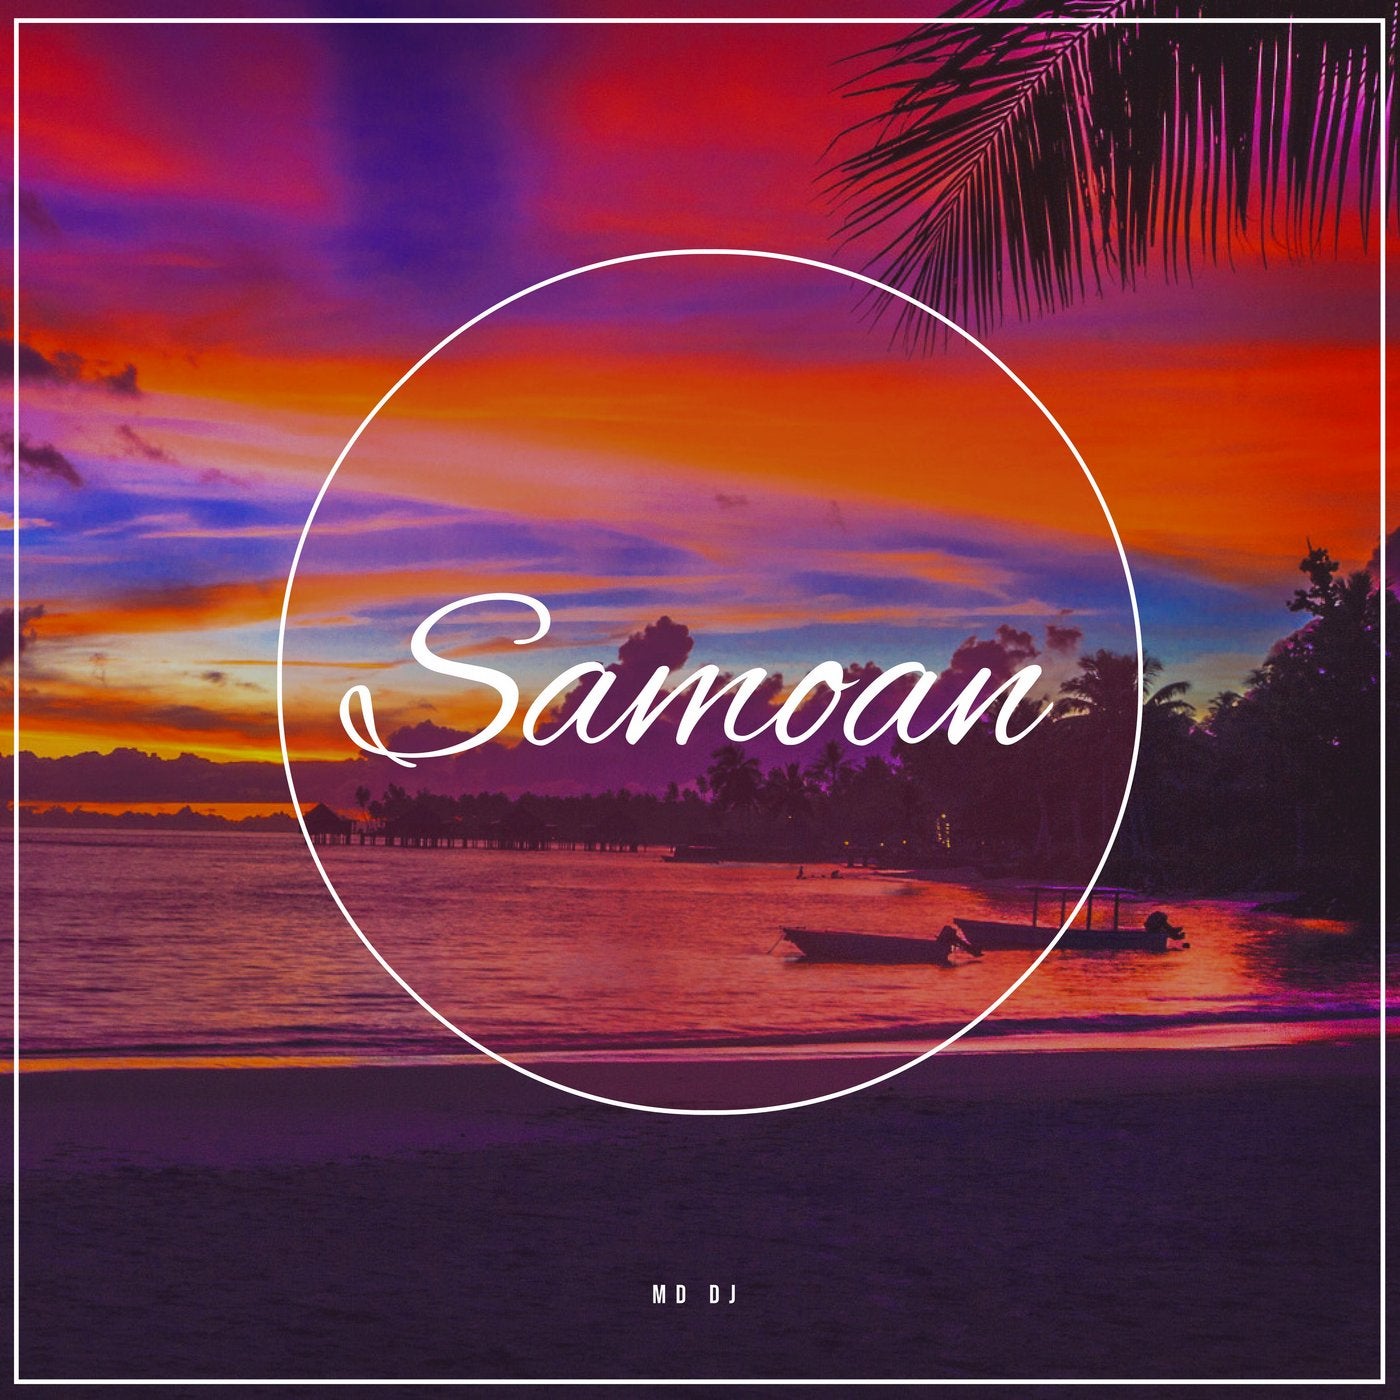 Samoan (Extended)